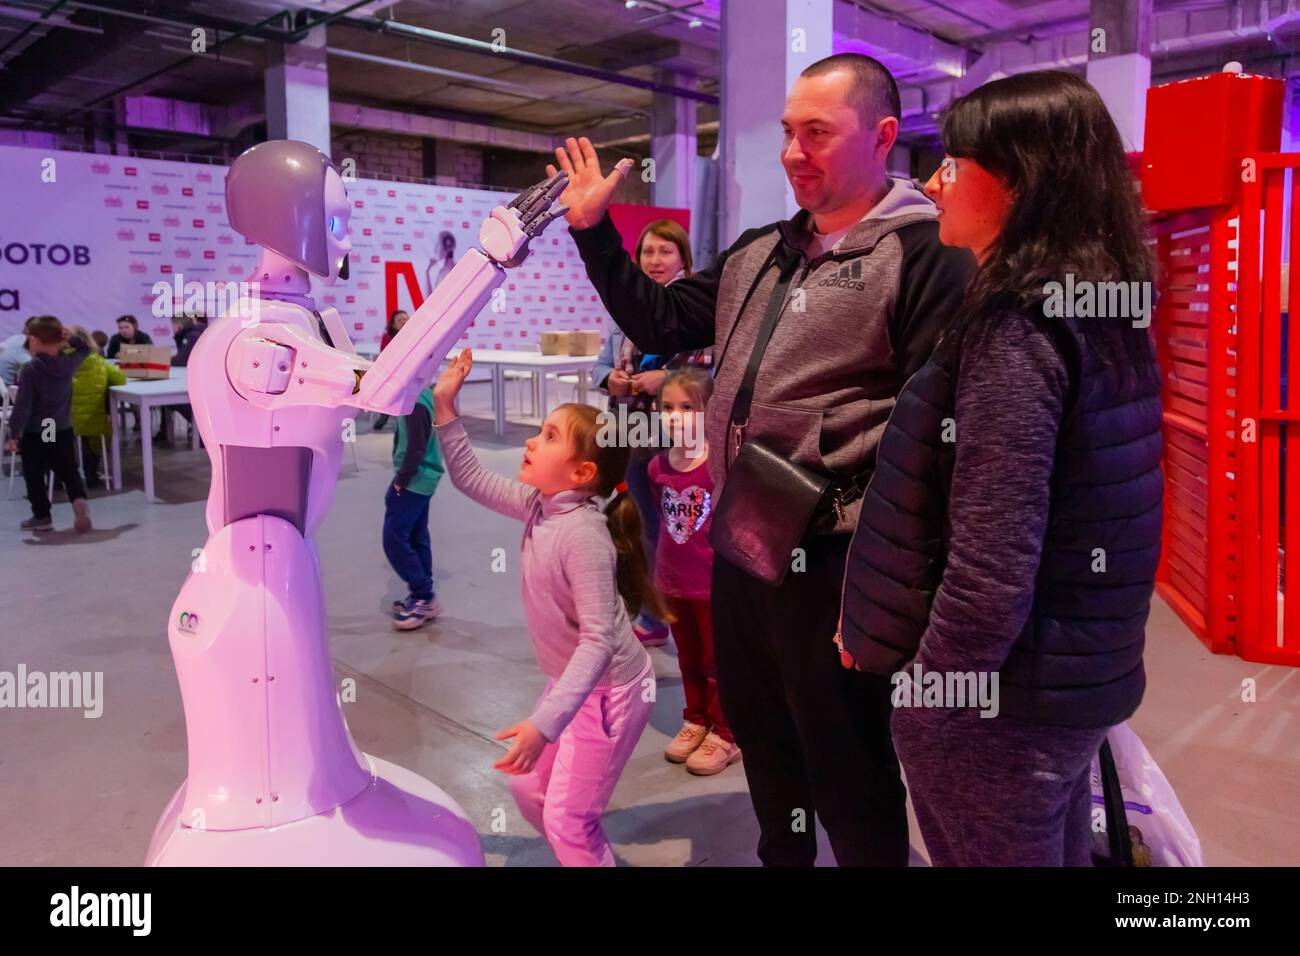 Exposition de robots, Federal Tour MTS Robostations. Les visiteurs avec des enfants interagissent avec les expositions. Russie, Rostov-sur-le-Don - 31 mars 2019 Banque D'Images